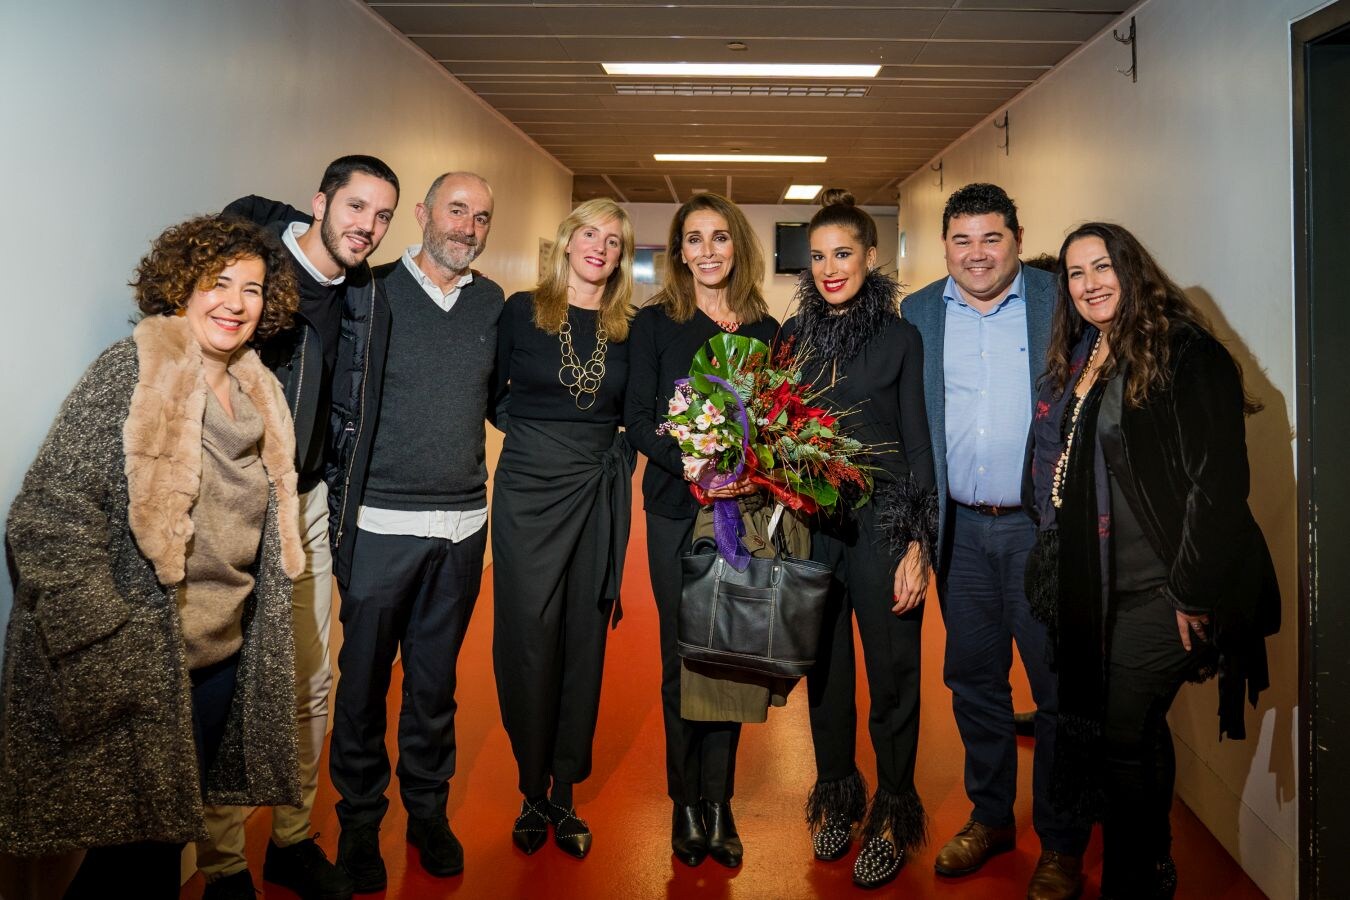 Un emocionante evento en el que, además de contar con un concierto único de Ana Belén, se ha colaborado con una asociación guipuzcoana con fines sociales